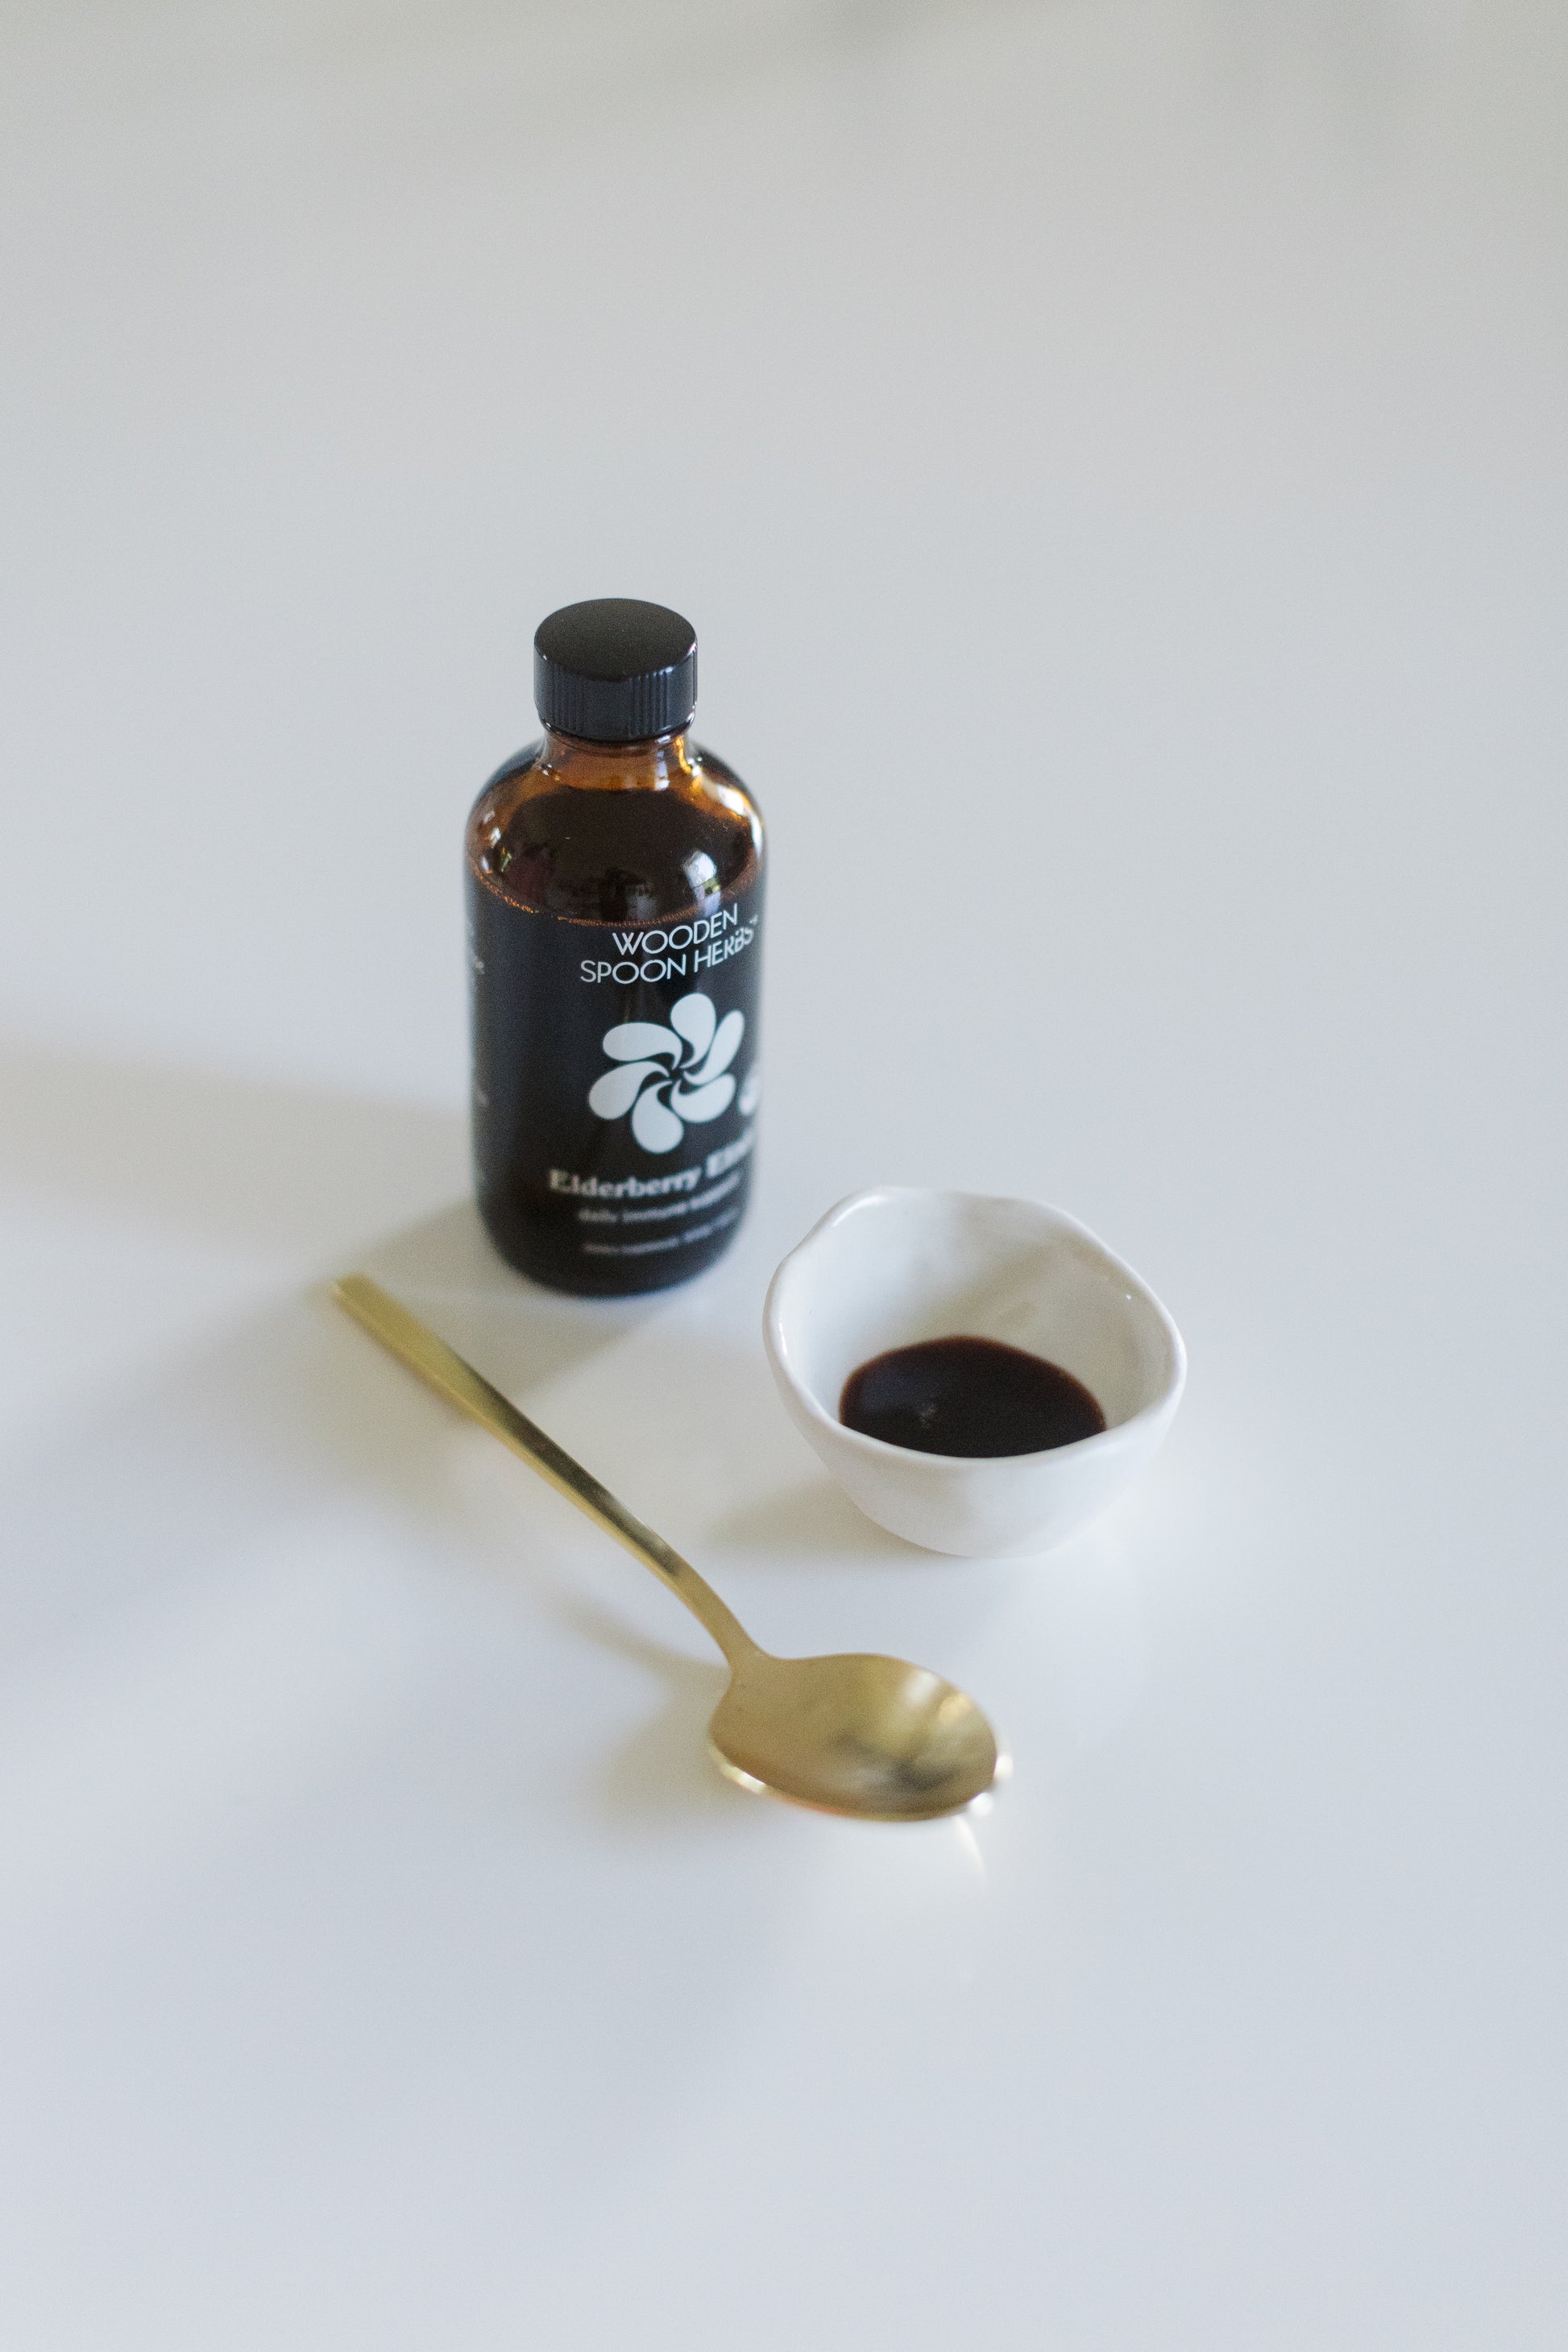 A bottle of Elderberry Elixir by Wooden Spoon Herbs sitting on a table.